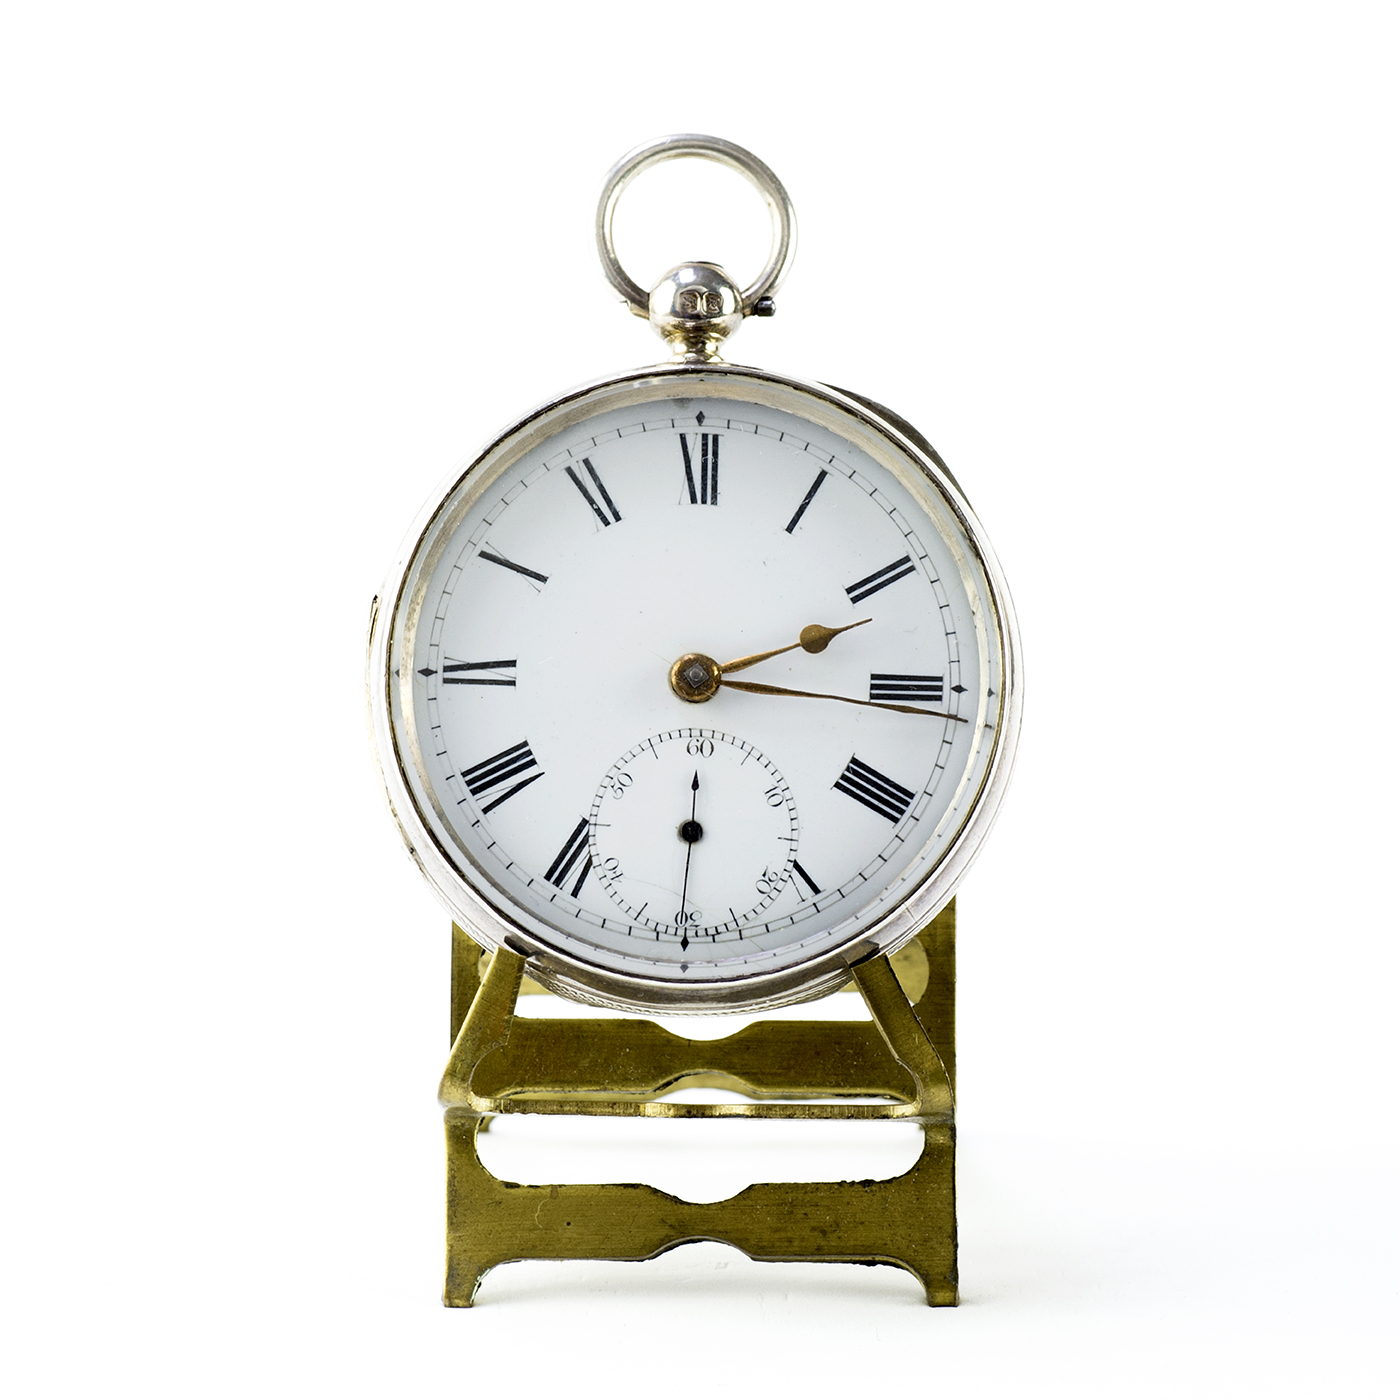 WYMARK (London). Reloj de Bolsillo, lepine, Half Fusee (Semicatalino). Londres, año 1881.